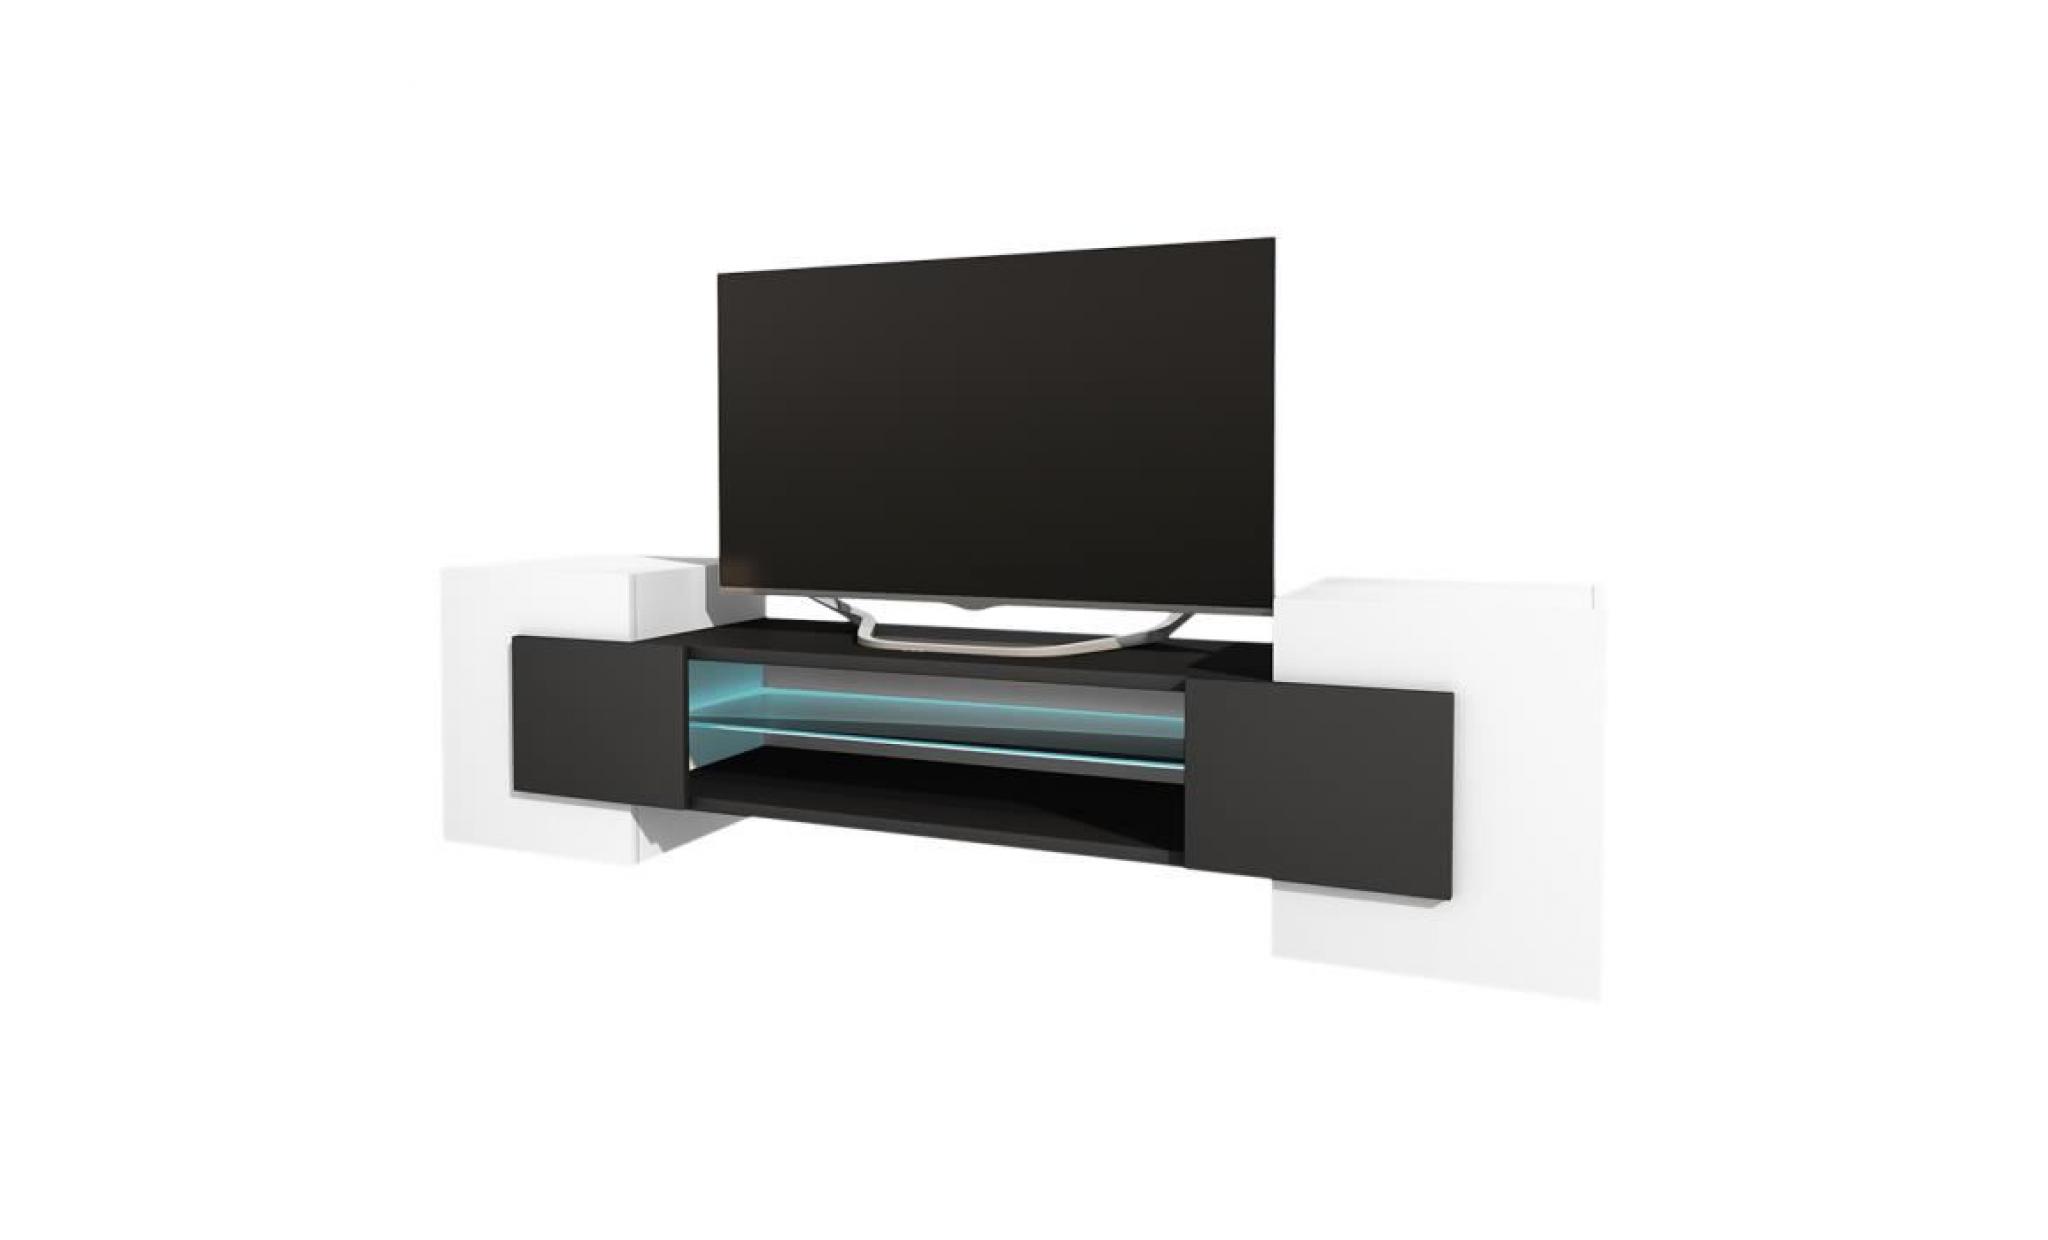 meuble tv / meuble de salon   charles   160 cm   blanc mat / béton   avec led   style contemporain   design moderne pas cher